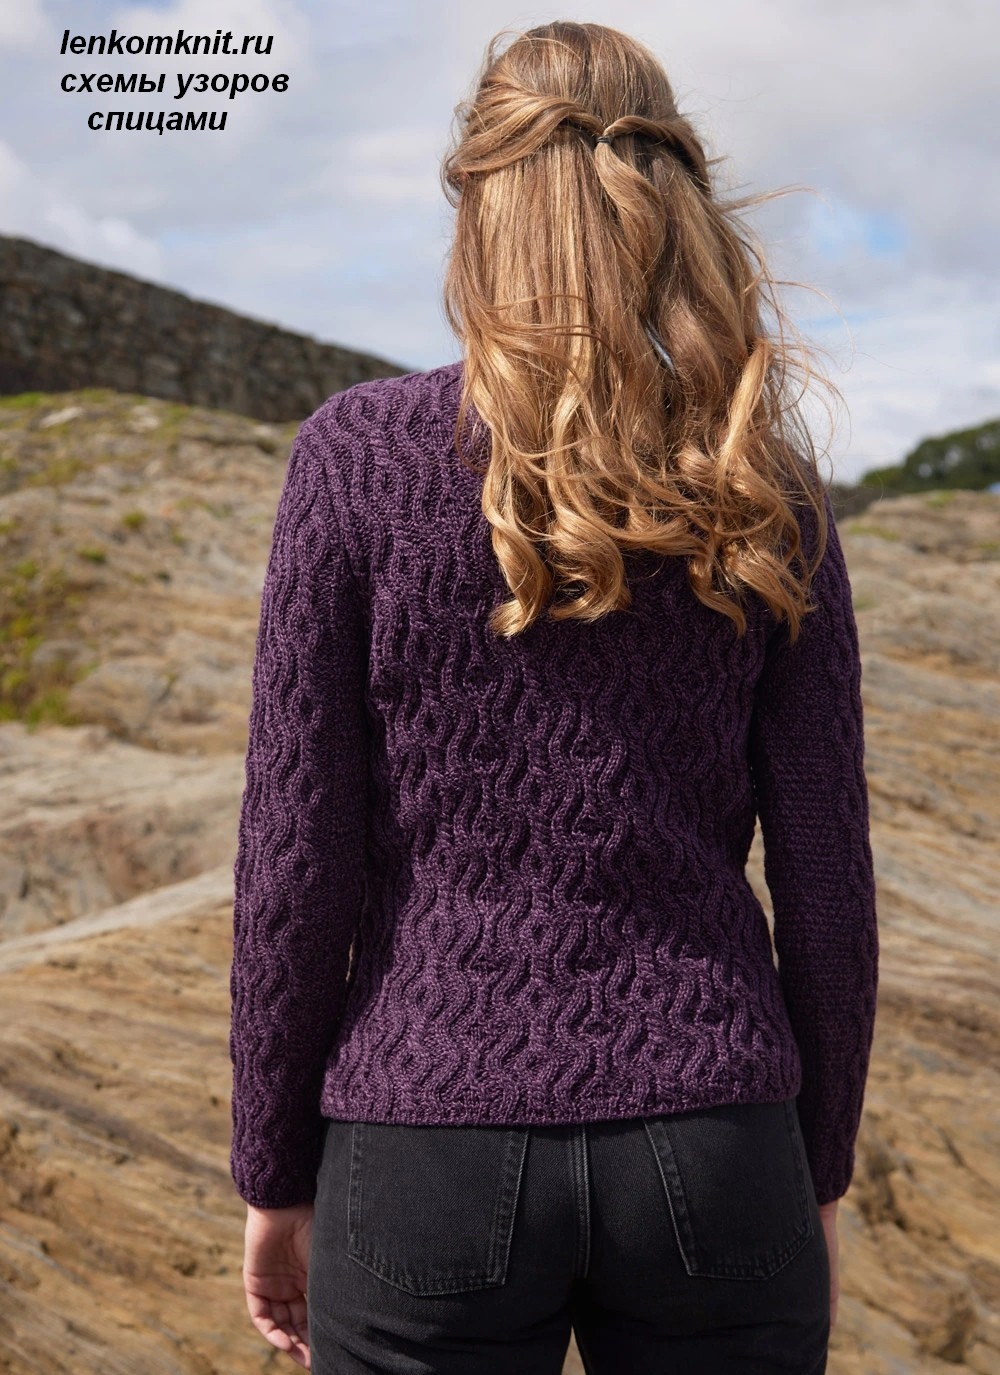 Арановый свитер Вlarney